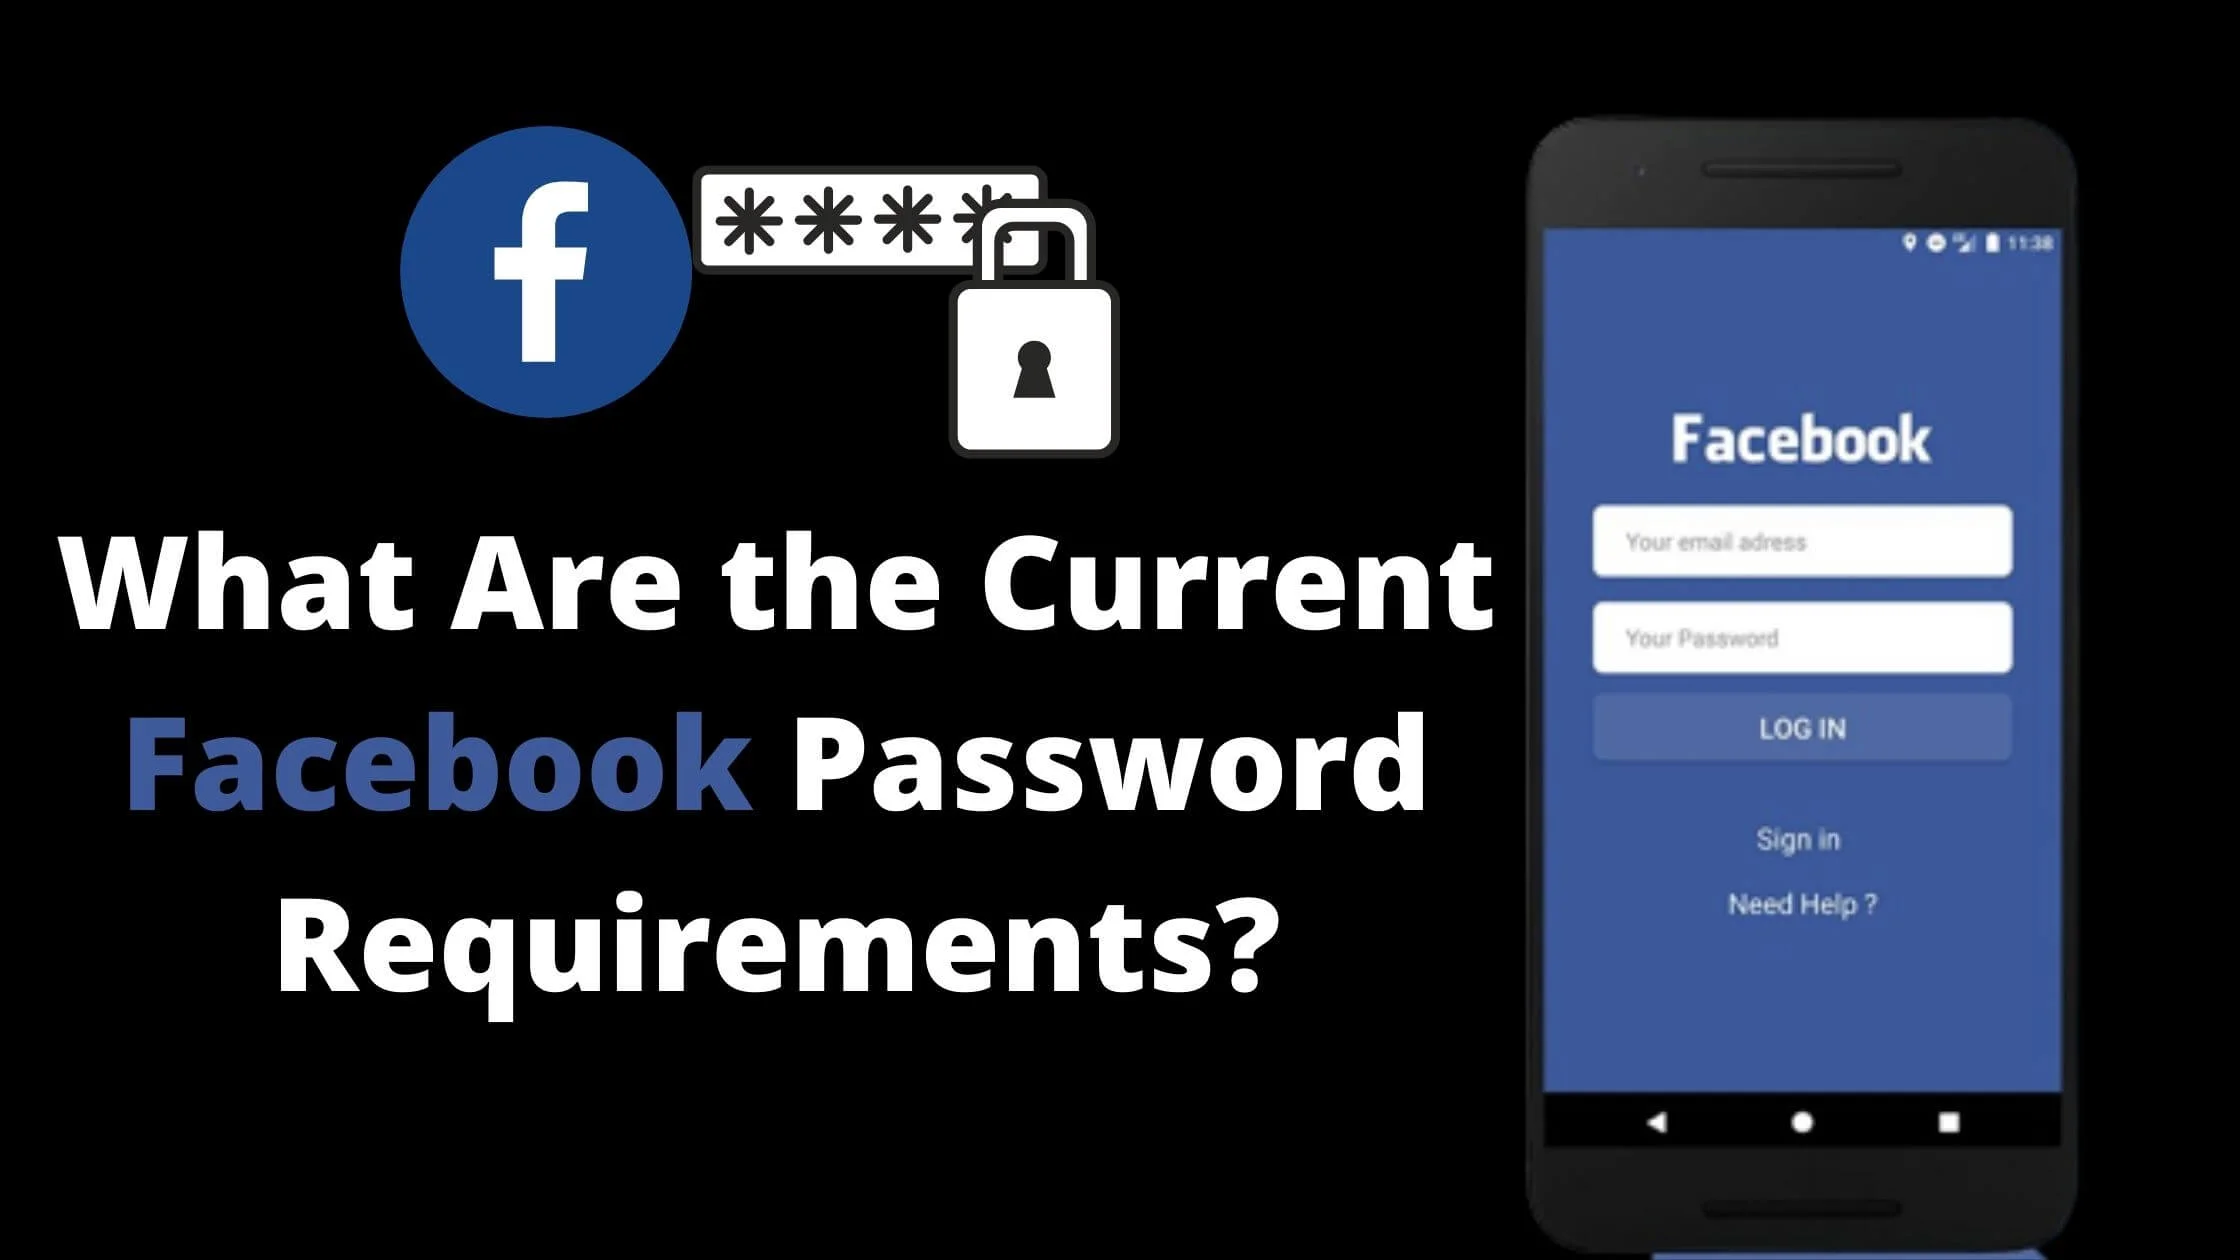 Facebook password requirements